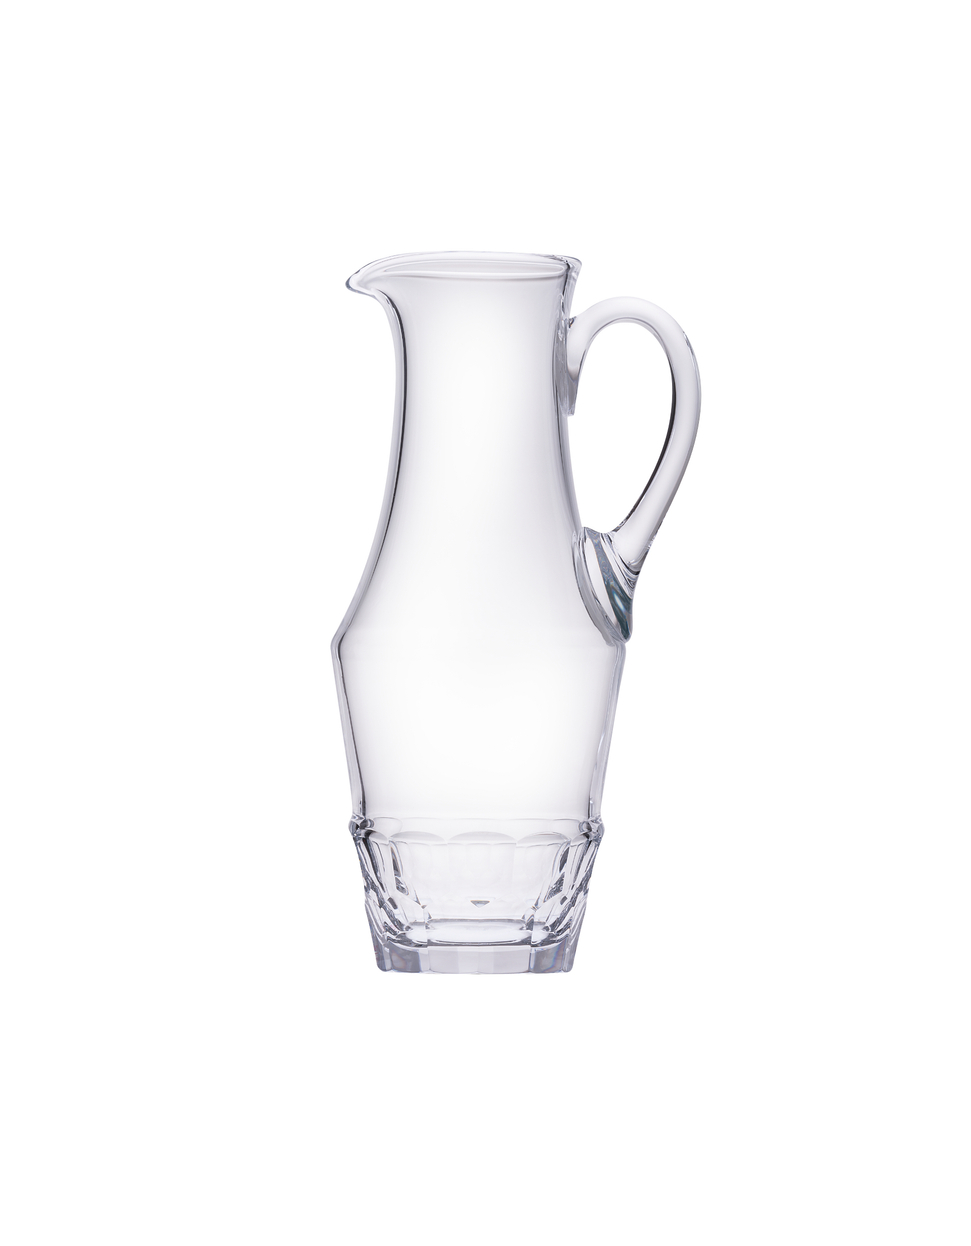 Sonnet water jug, 1,500 ml